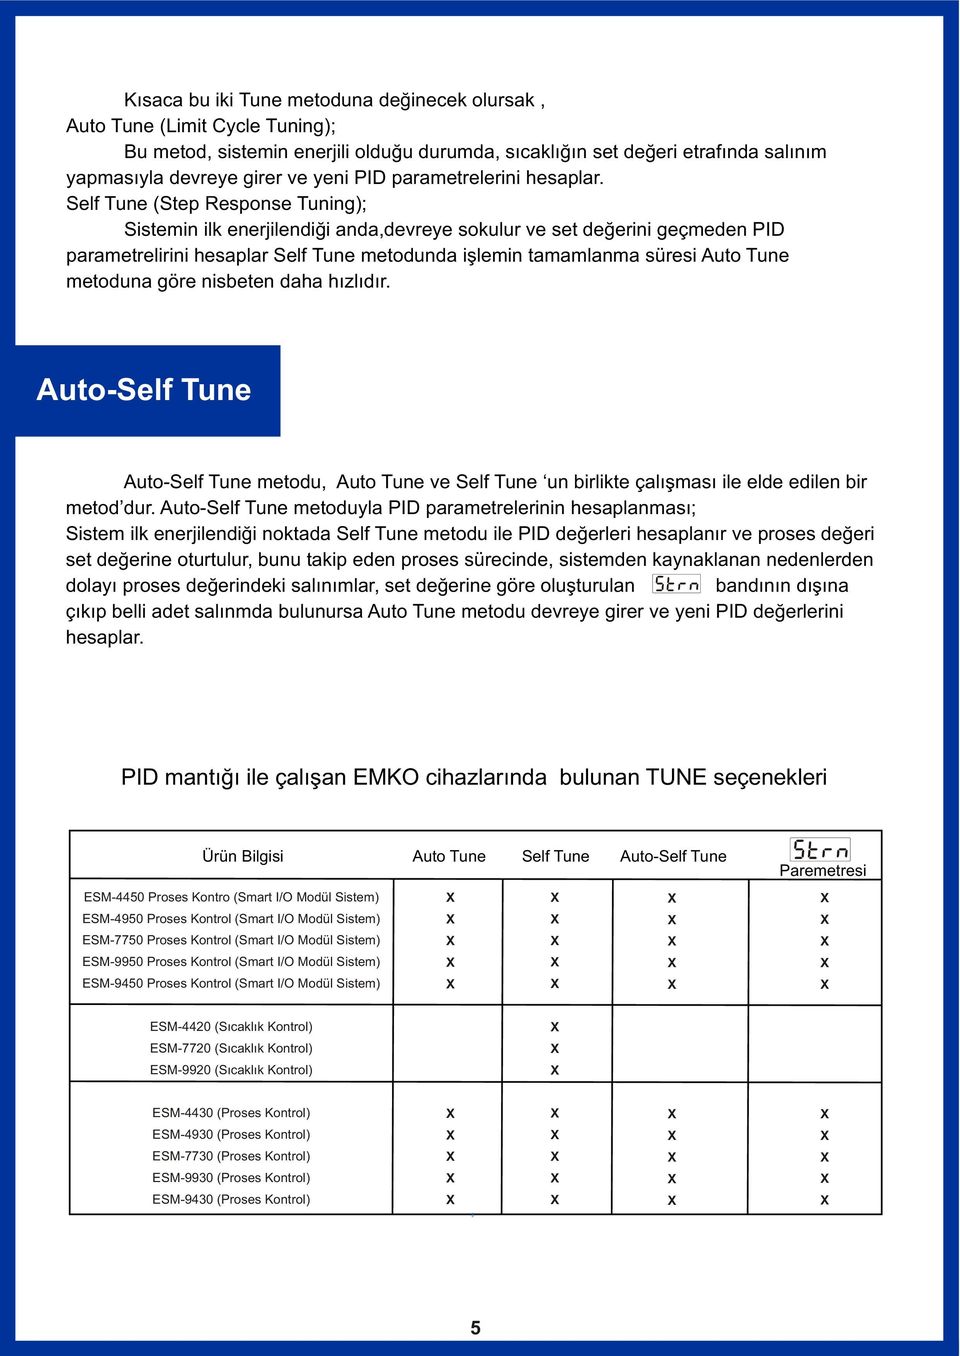 Self Tune (Step Response Tuning); Sistemin ilk enerjilendiði anda,devreye sokulur ve set deðerini geçmeden PID parametrelirini hesaplar Self Tune metodunda iþlemin tamamlanma süresi Auto Tune